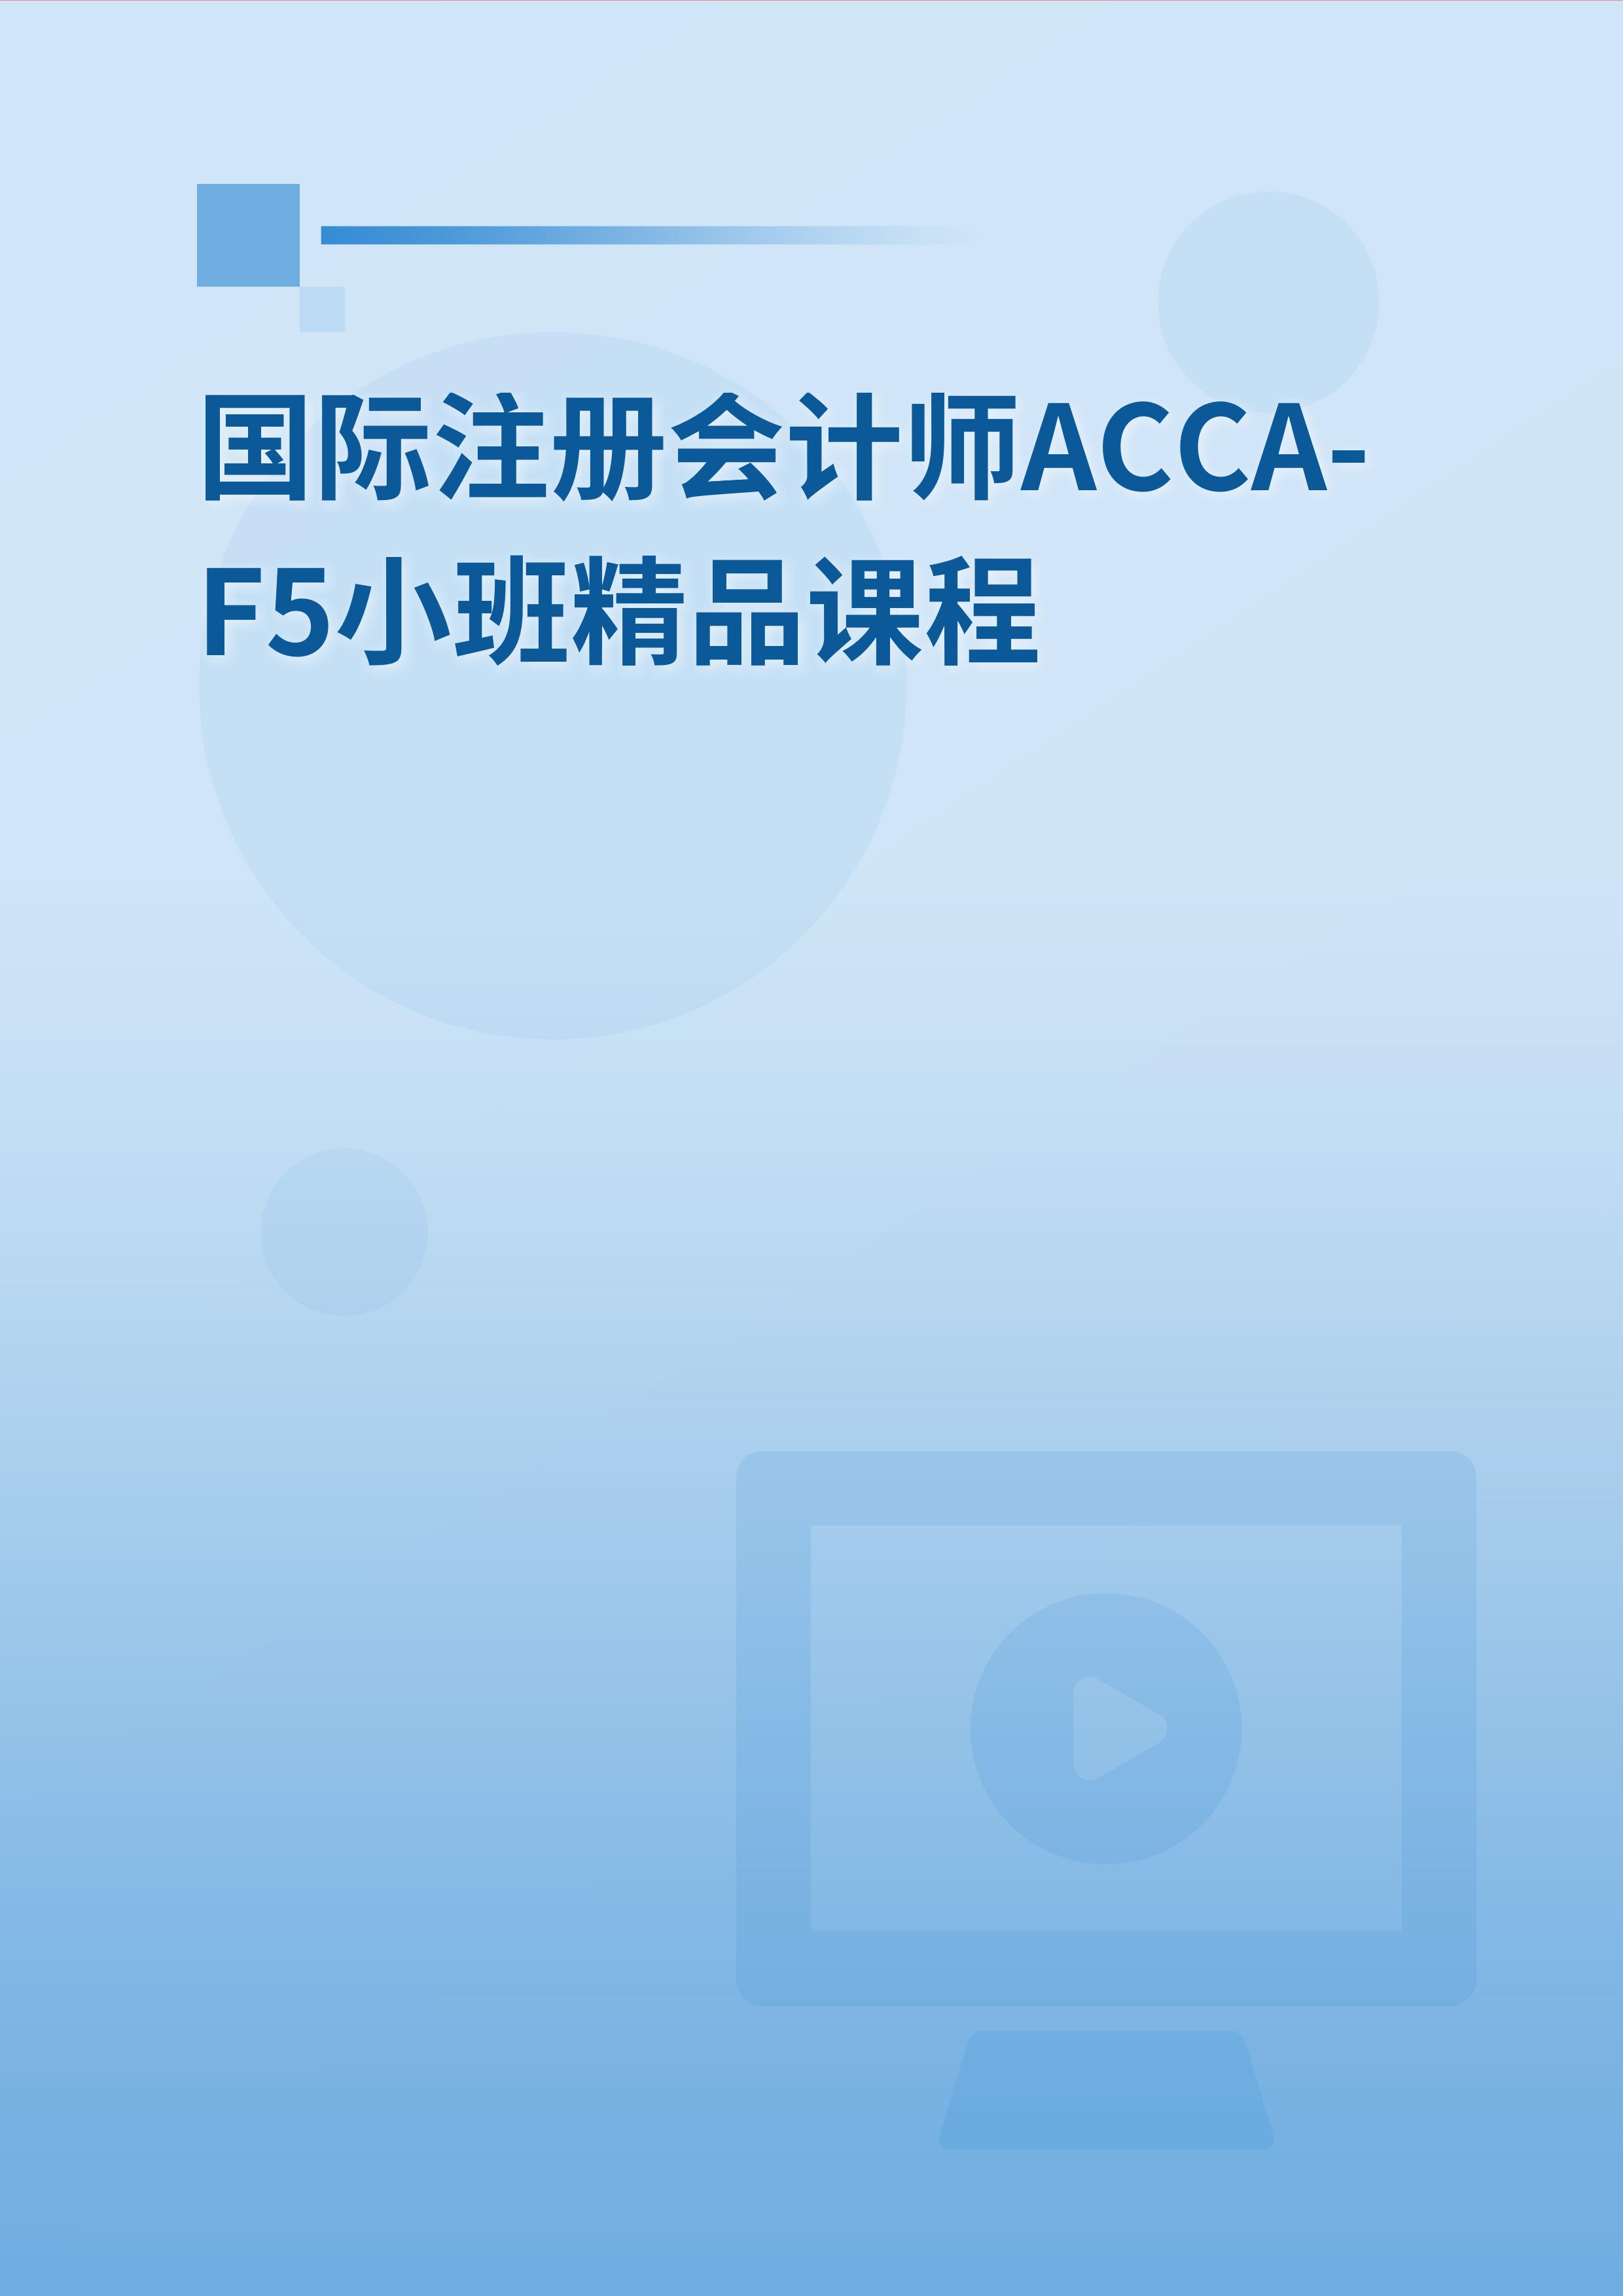 国际注册会计师ACCA-F5小班精品课程